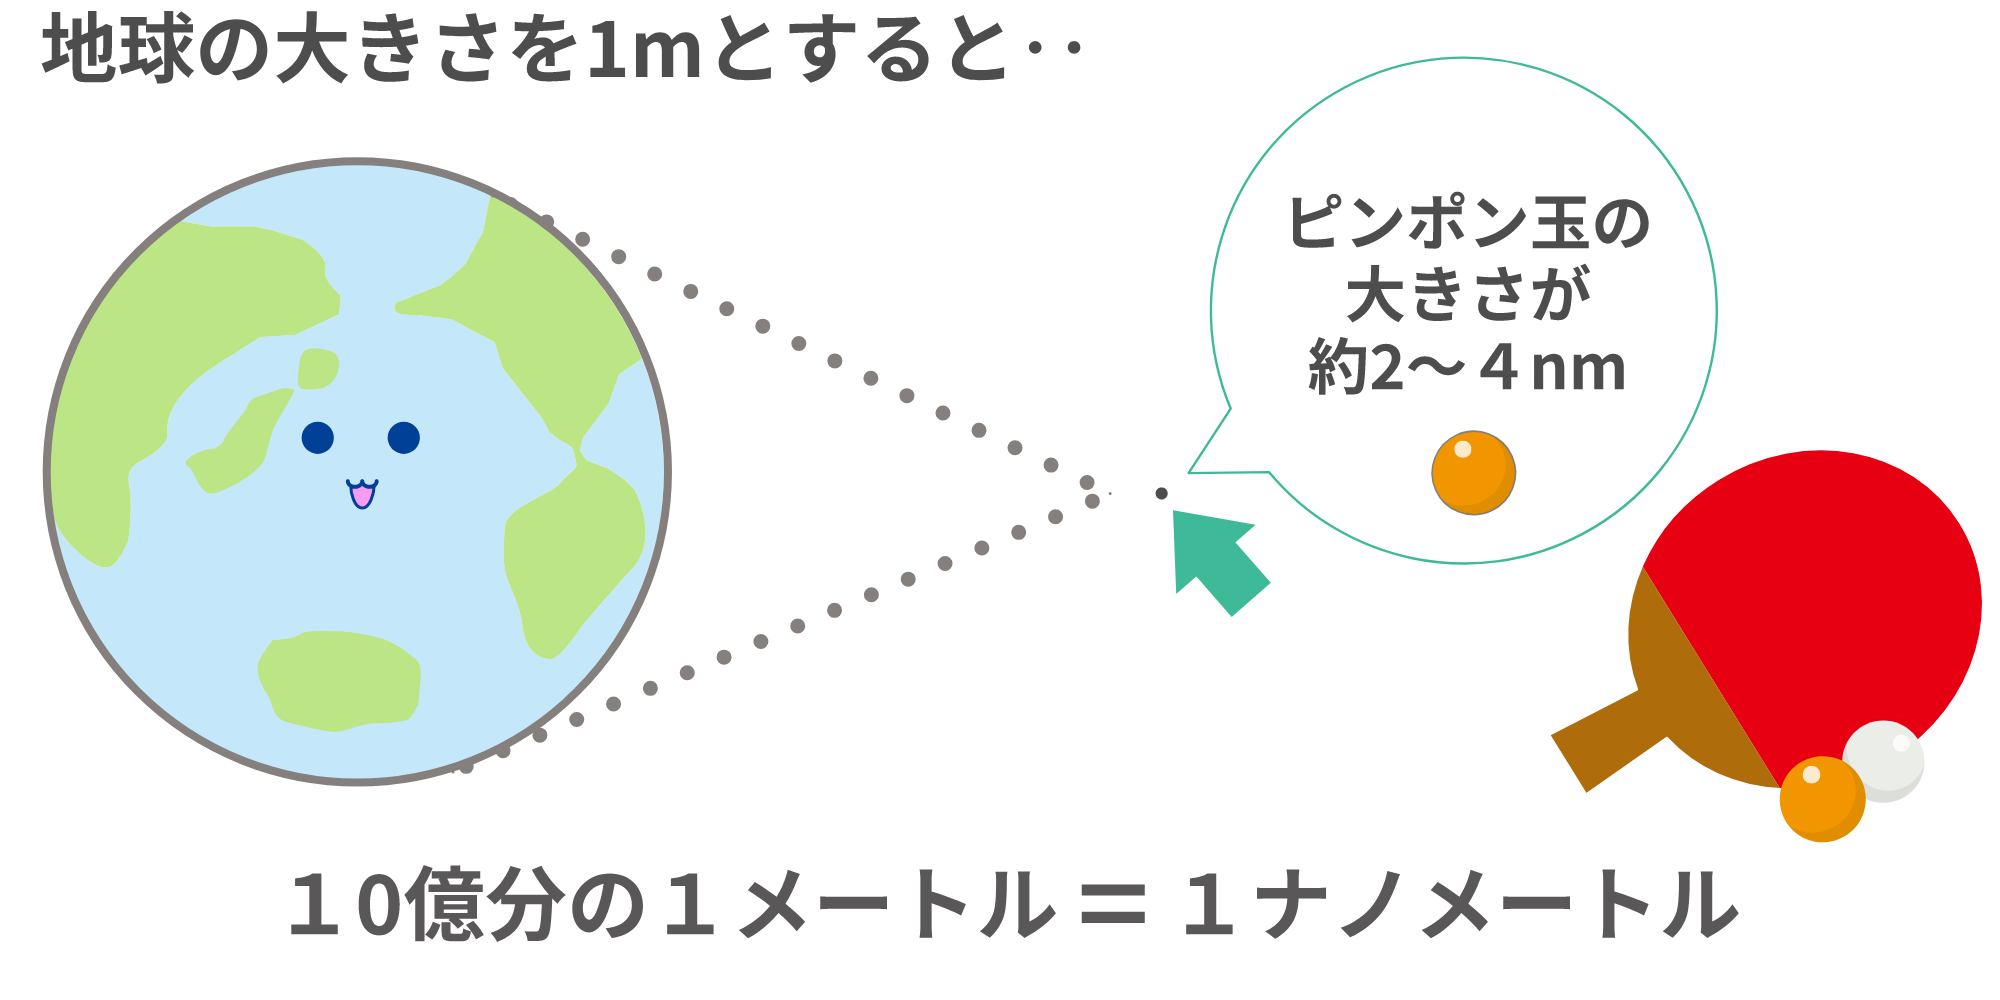 地球の大きさを1mとすると（ピンポン玉との比較）10億分の1メートル＝1ナノメートル